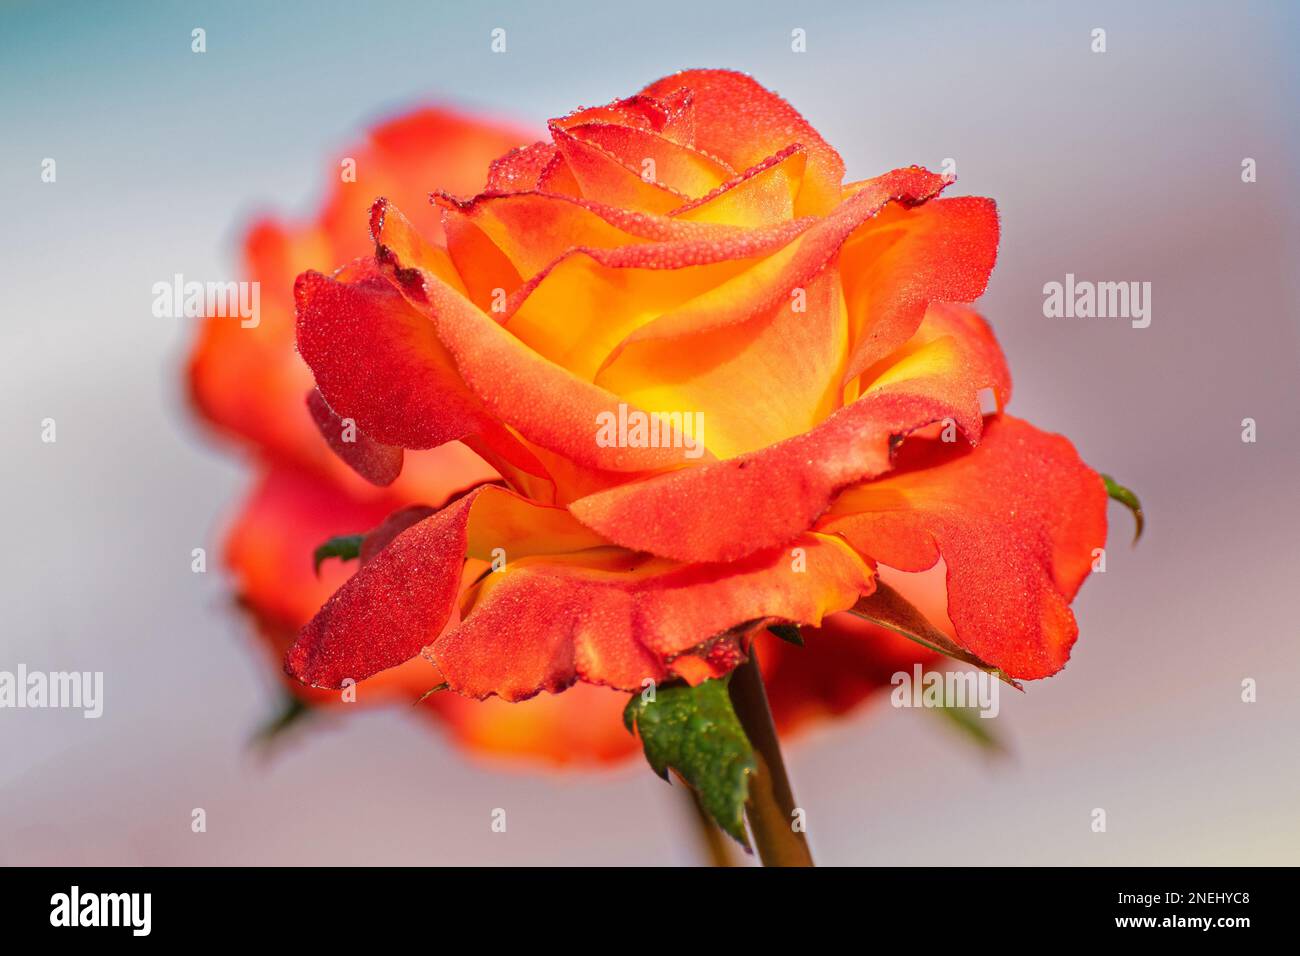 Gocce di rugiada sui petali di rosa arancio, fiore della pianta legnosa perenne fiorita del genere Rosa , Rosaceae. Immagine di fiori naturali mattutini invernali Foto Stock